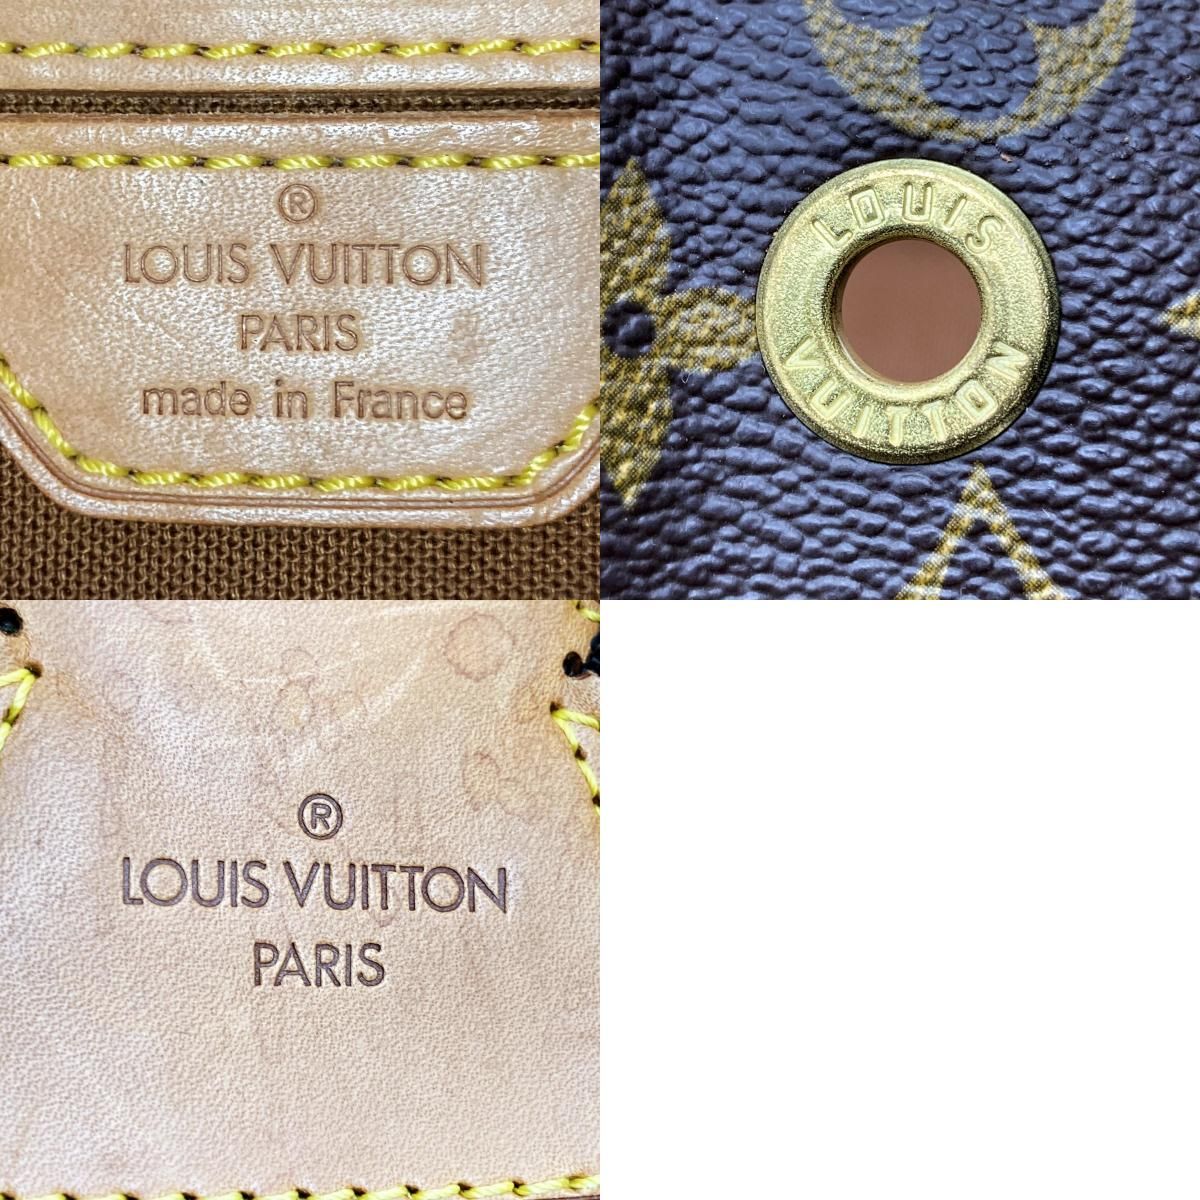 LOUIS VUITTON ルイ・ヴィトン モンスリGM モノグラム リュック デイパック ブラウン PVC レディース メンズ M51135 USED  中古 - メルカリ